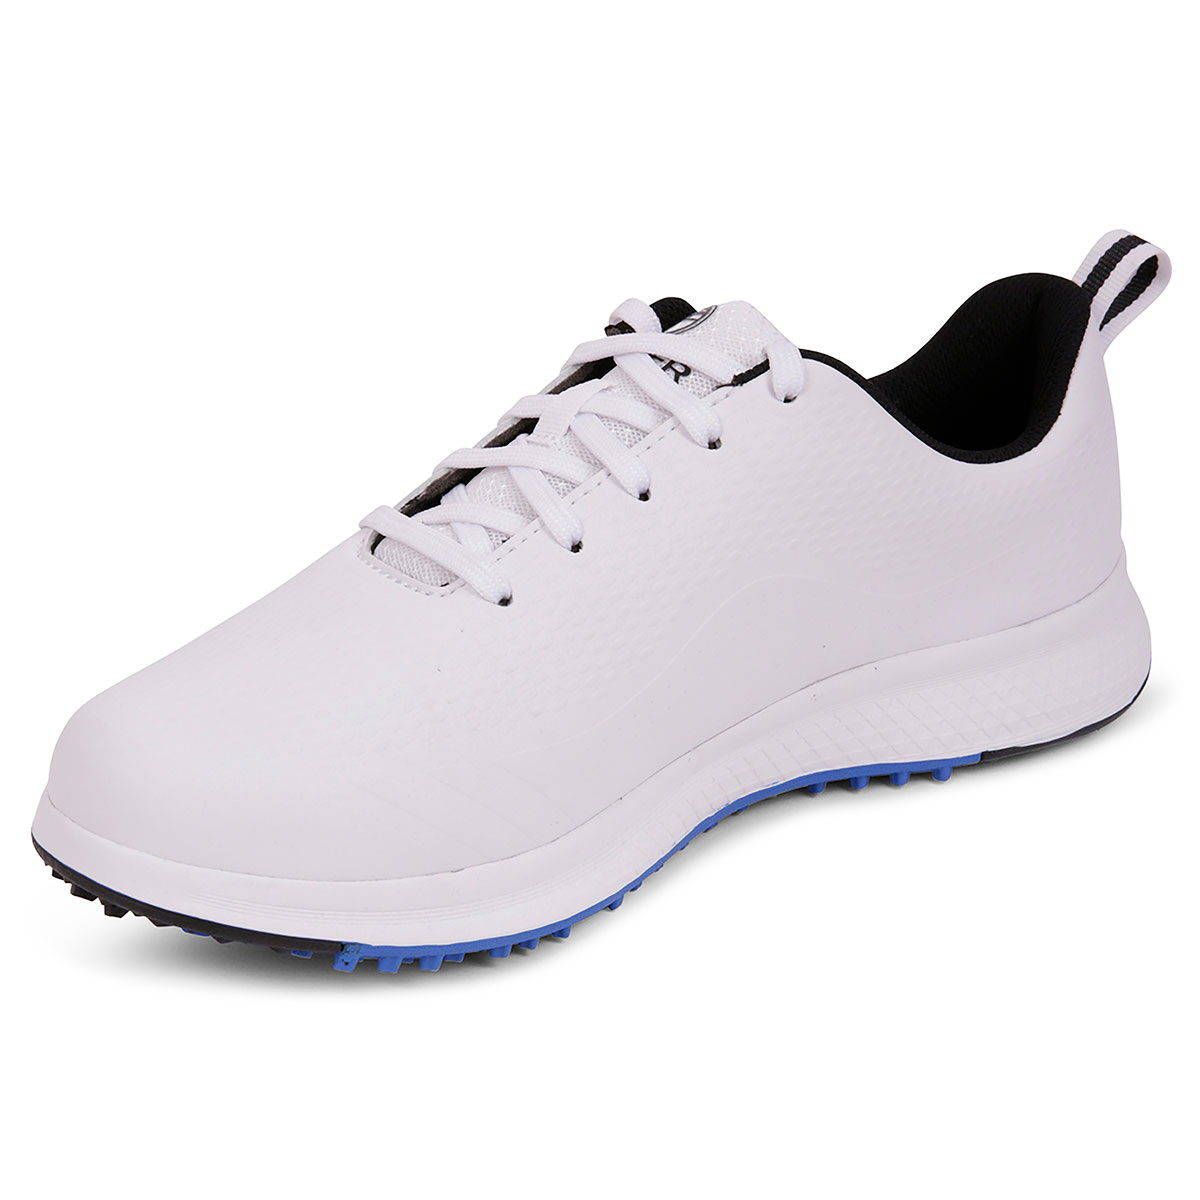 Fazer Men's Ventura Waterproof Spikeless Golf Shoes from american golf